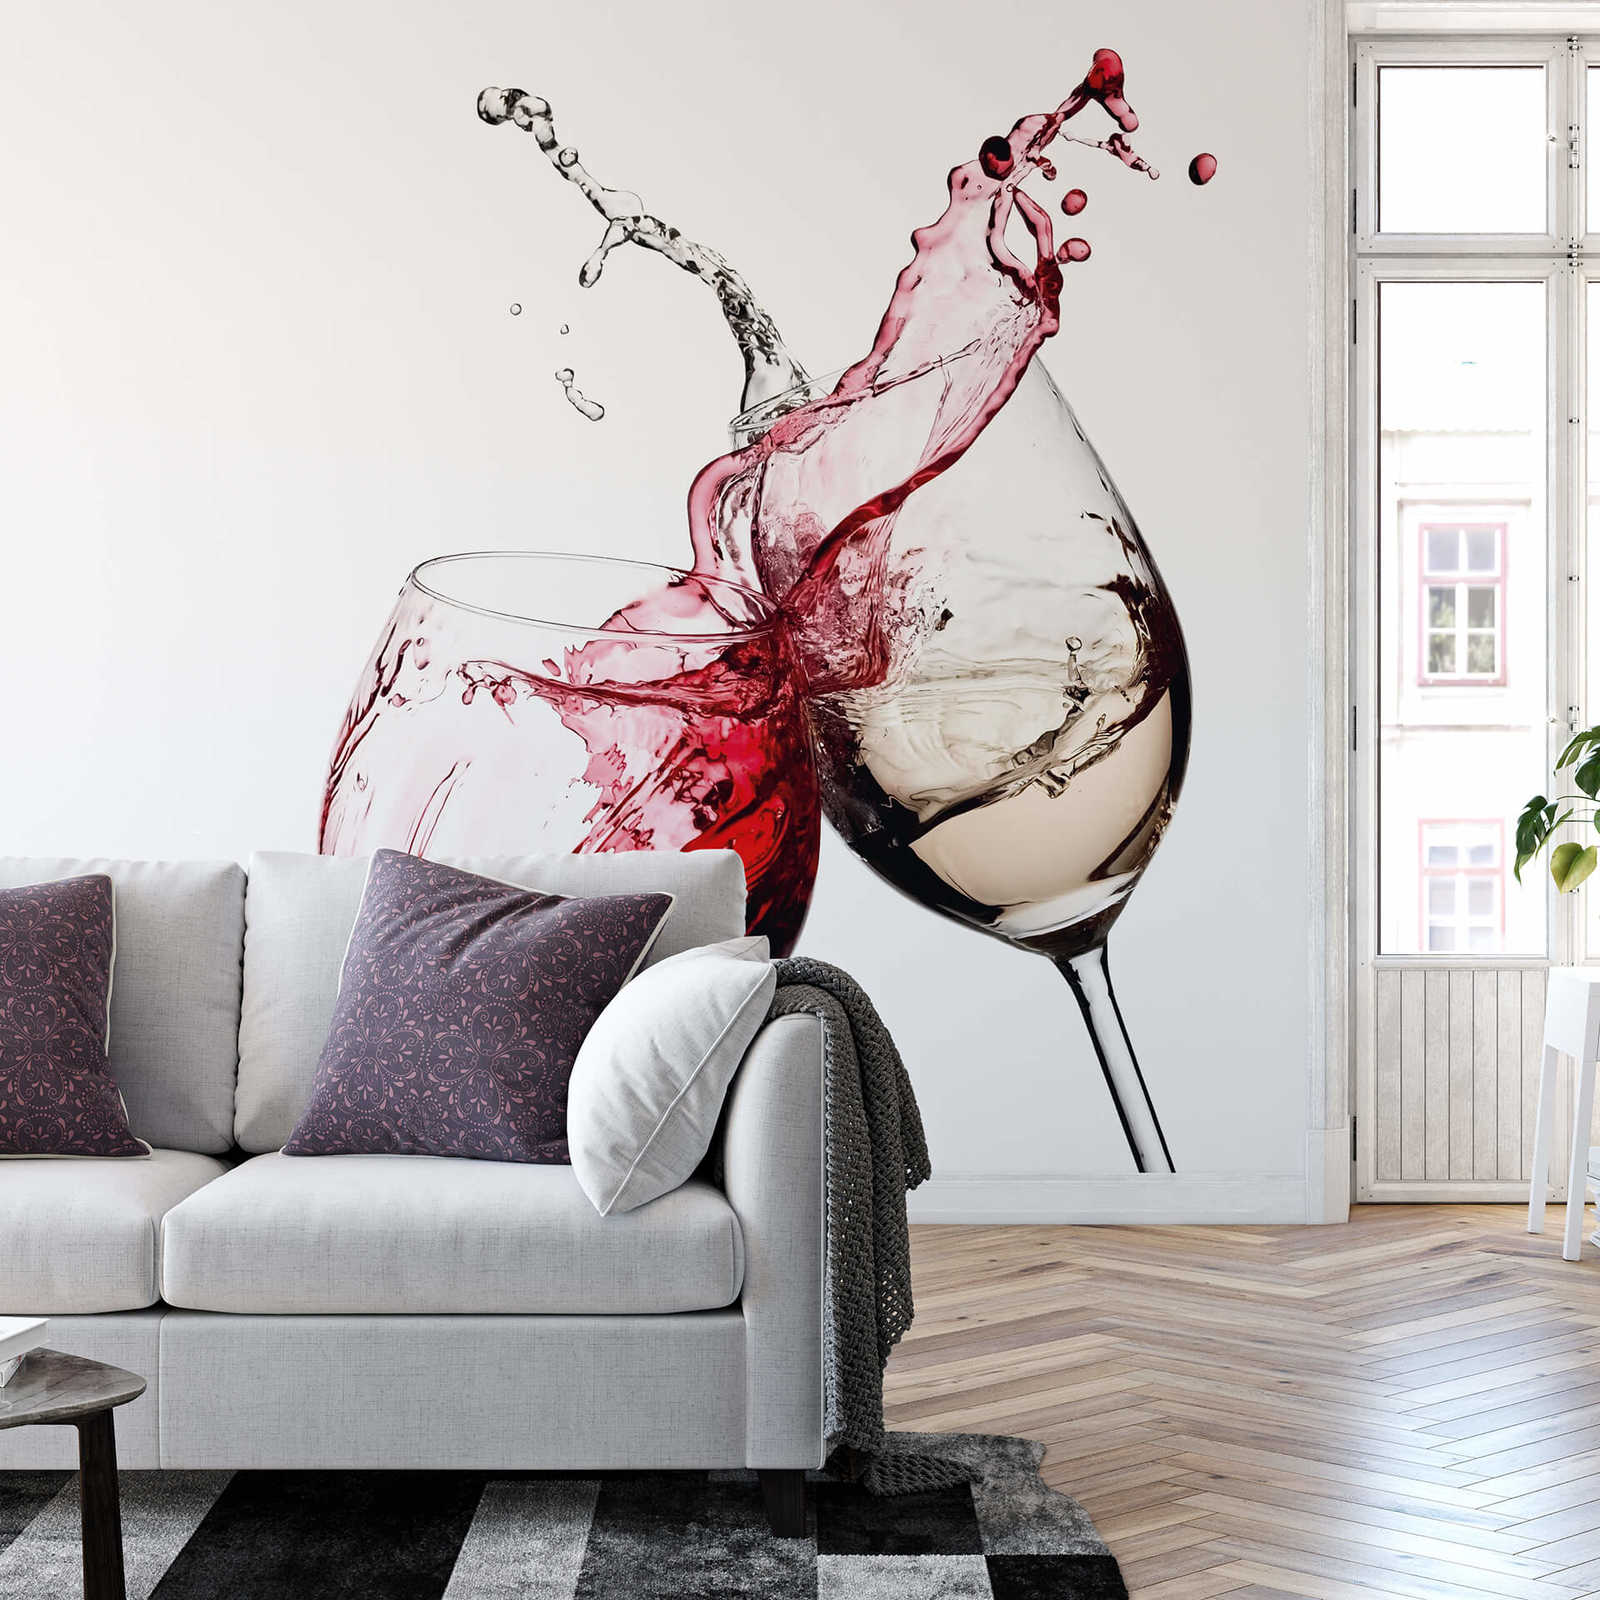             Kitchen mural wine glasses red & white
        